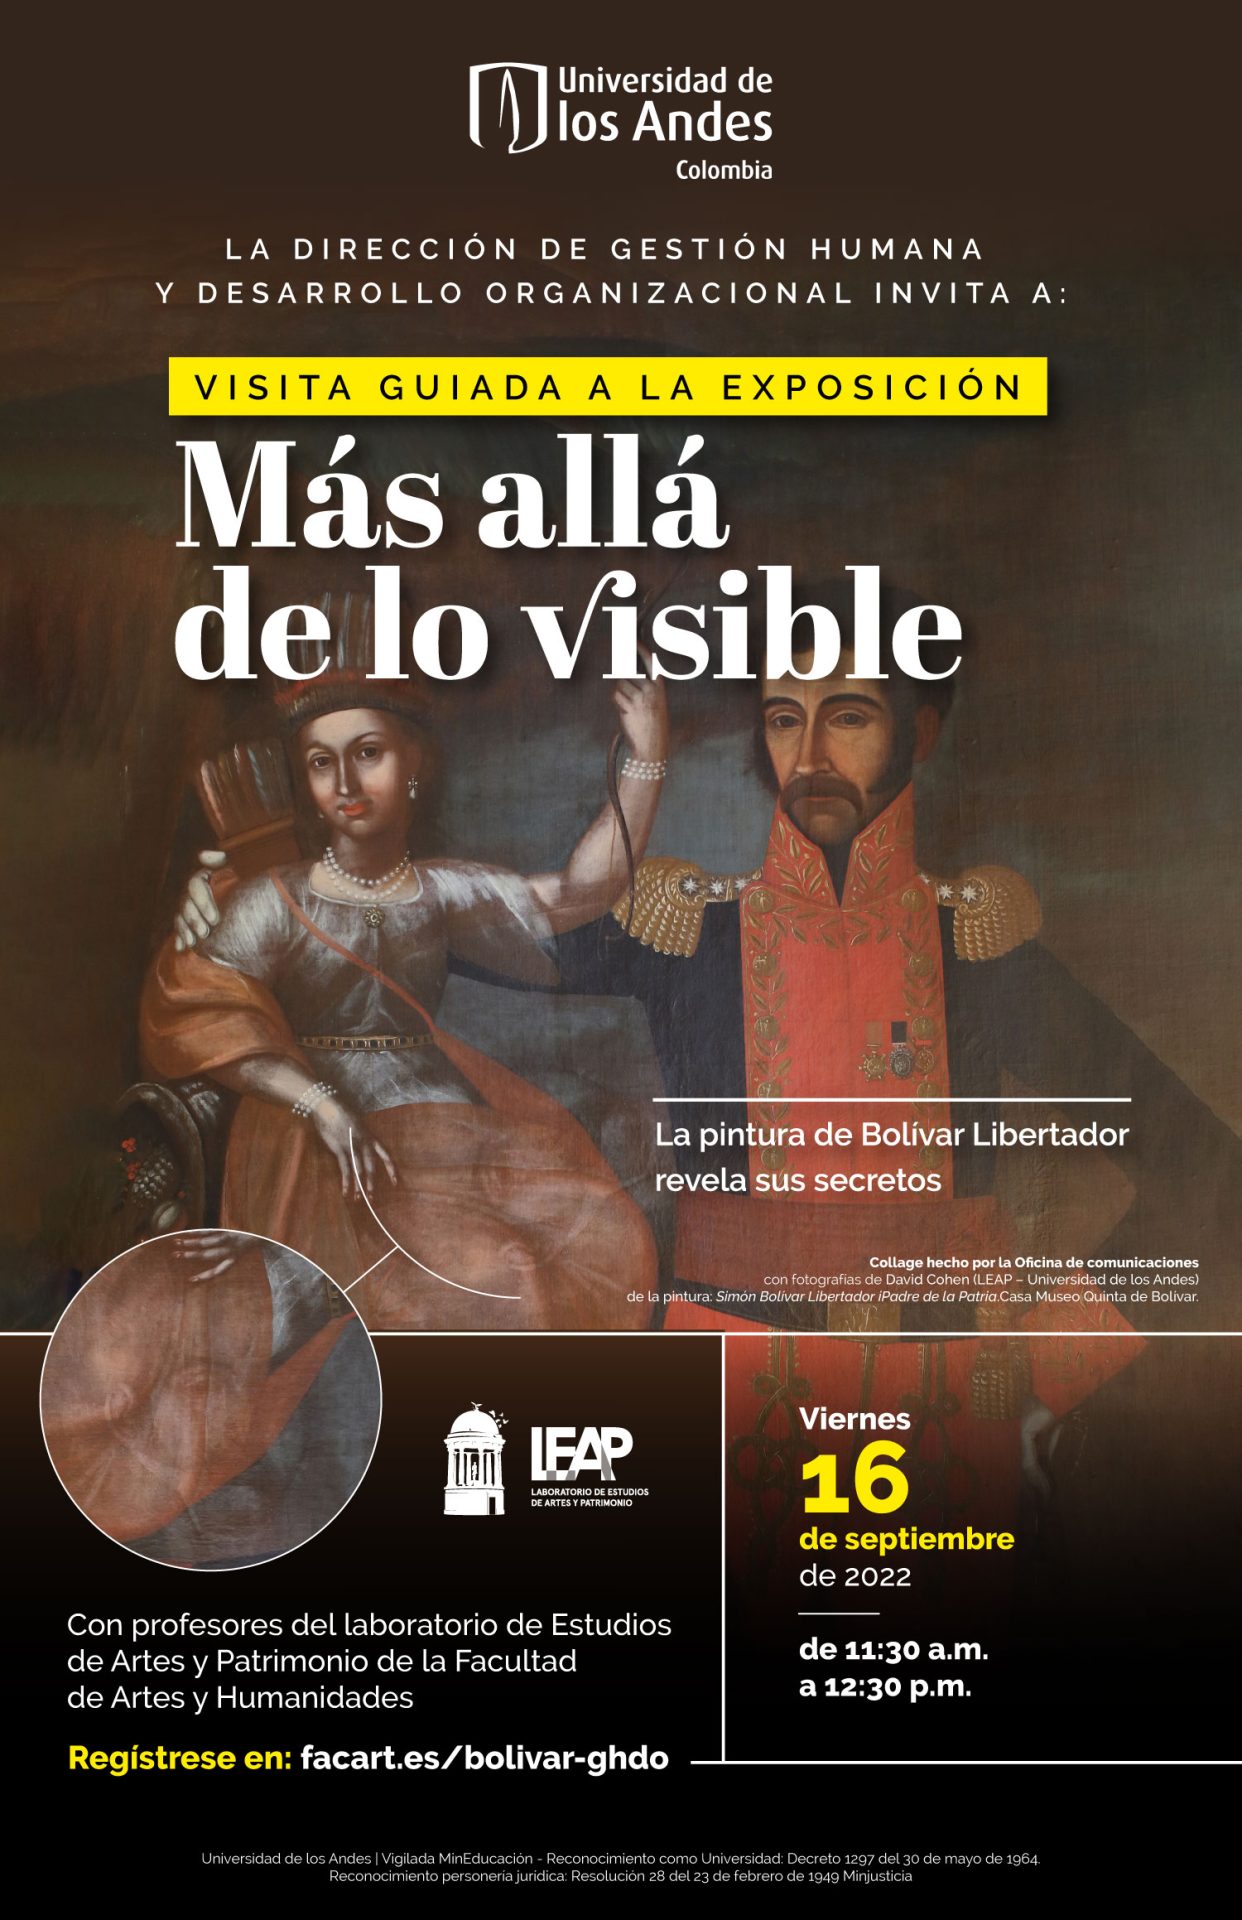 La Facultad de Artes y Humanidades invitan a la visita guiada a la exposición Más allá de lo visible: la pintura de Bolivar Libertador revela sus secretos